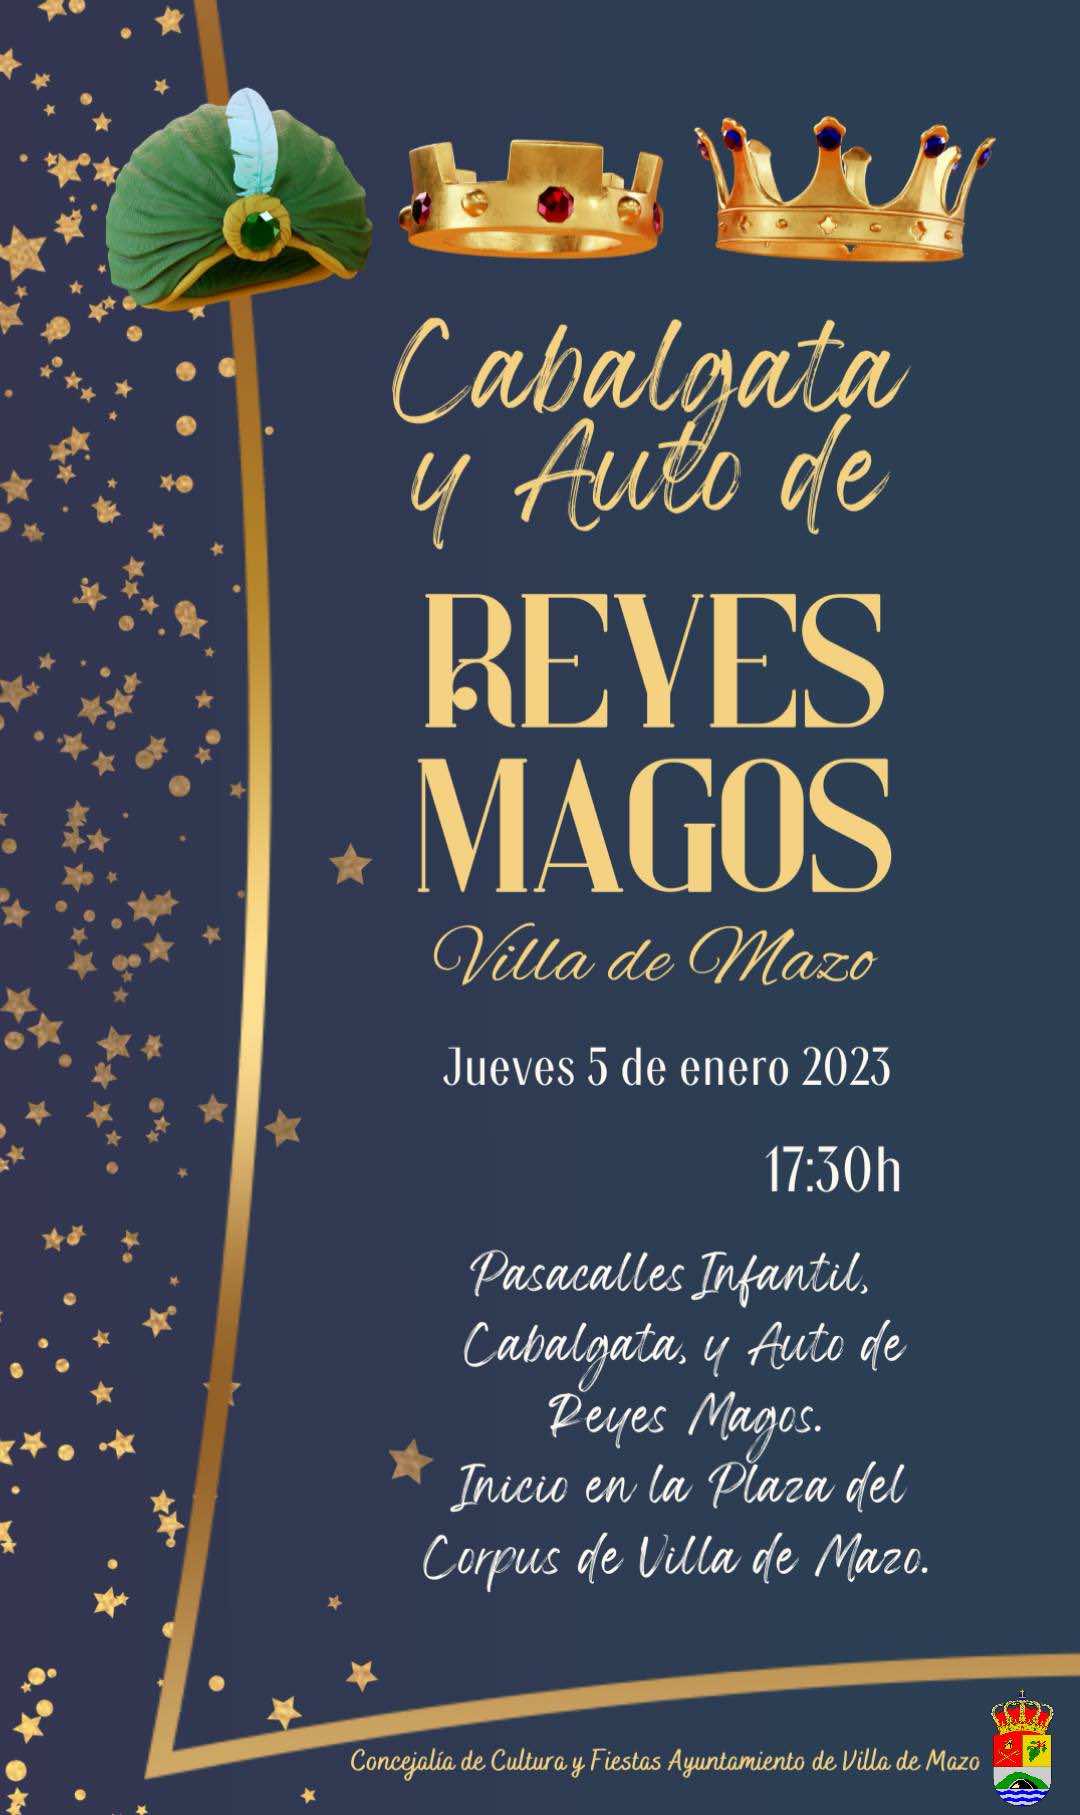 Villa de Mazo espera con ilusión su tradicional Cabalgata y Auto de Reyes Magos